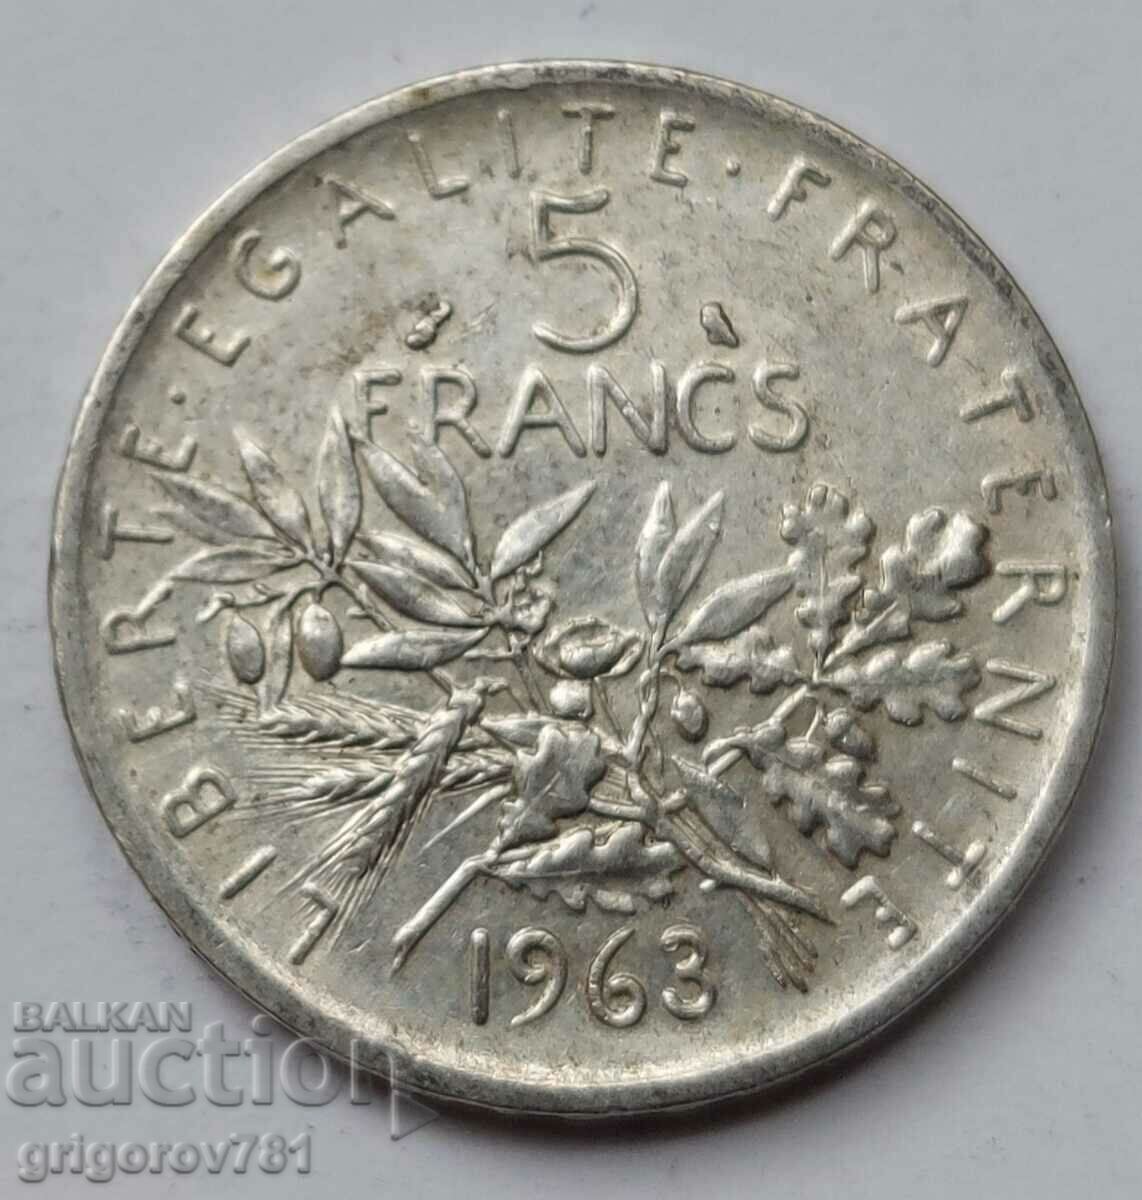 5 Franci Argint Franta 1963 - Moneda de argint #7